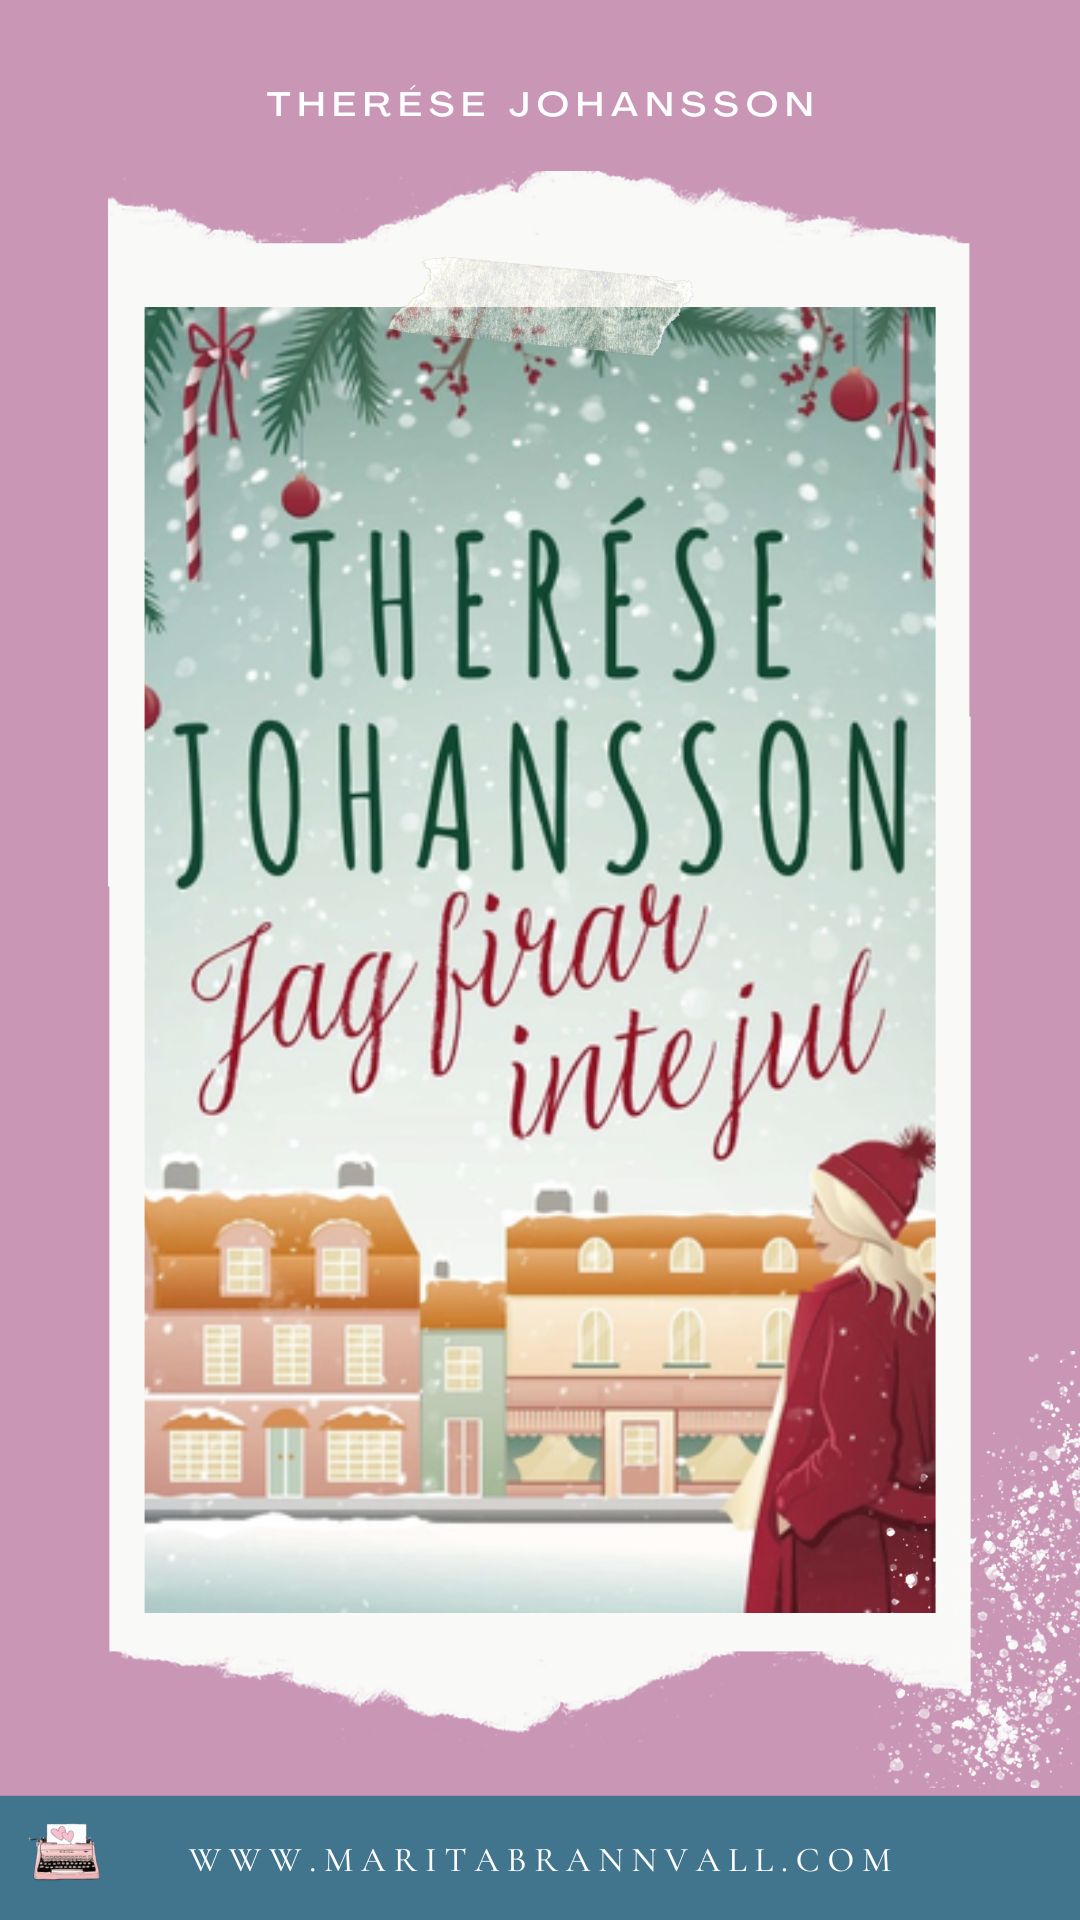 Författare Therese johansson